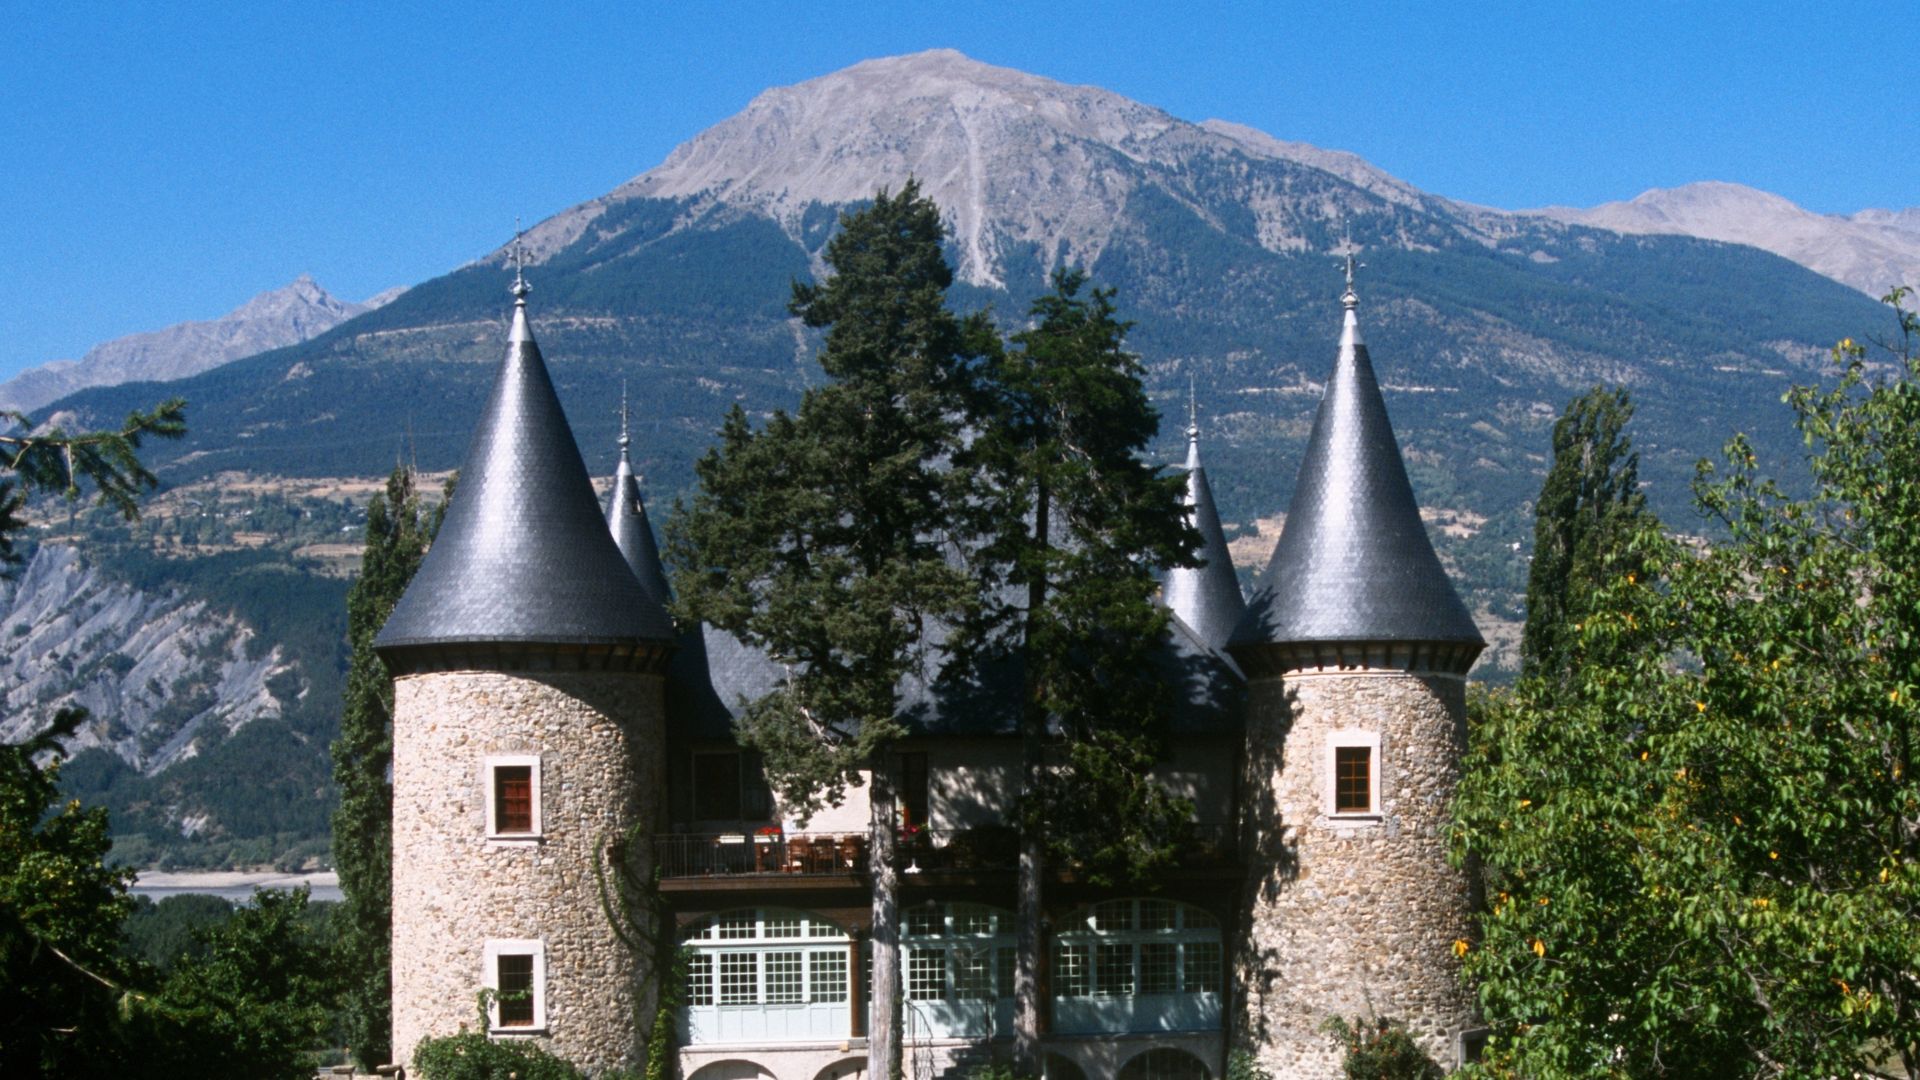 Chateau de Picomtal, Hautes-Alpes, France